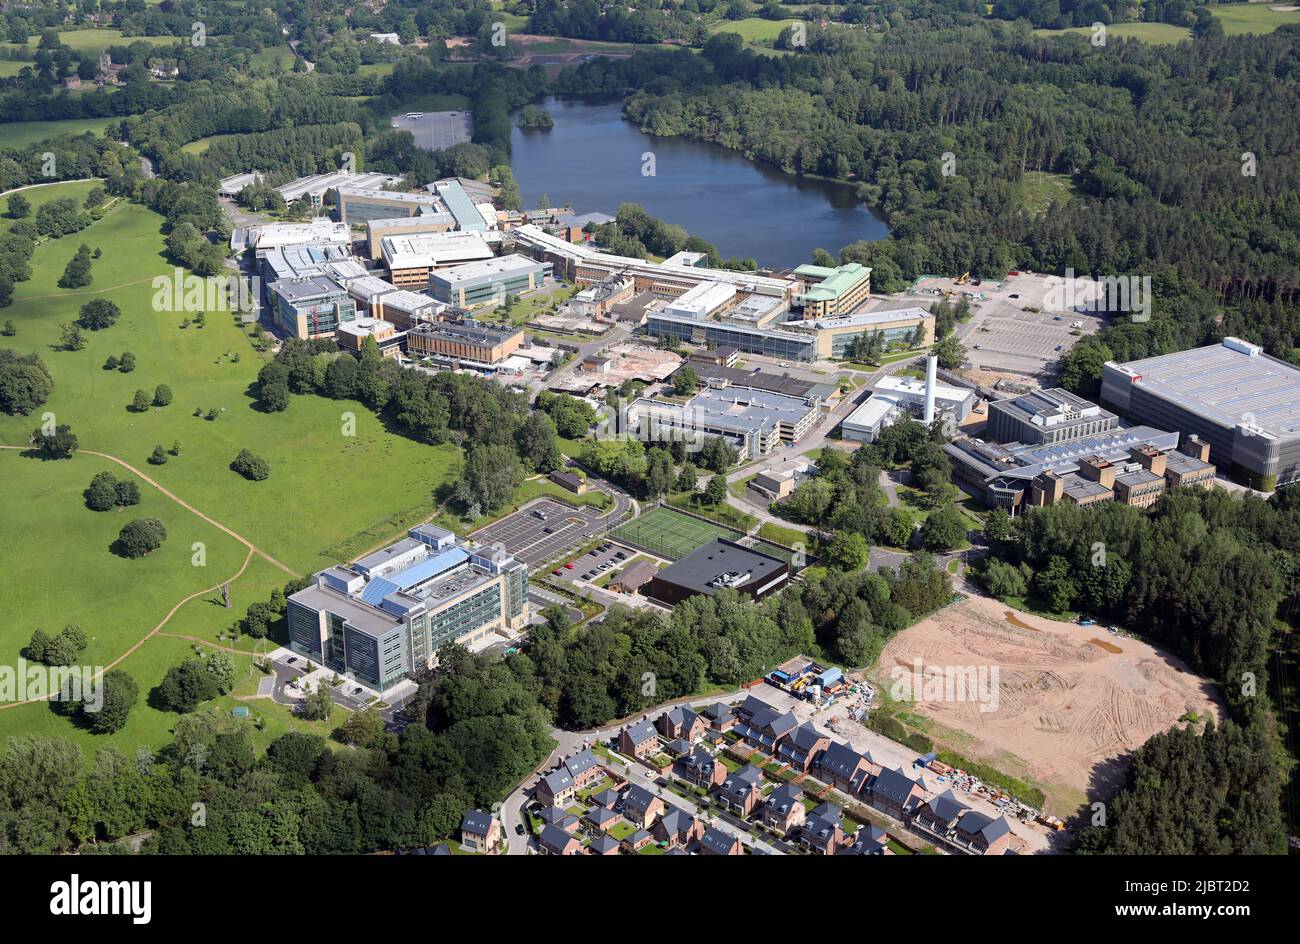 Vue aérienne du parc Alderley, parc technologique de Nether Alderley, Cheshire. Le Royal London House, un immeuble de bureaux, est dans la perte. Banque D'Images